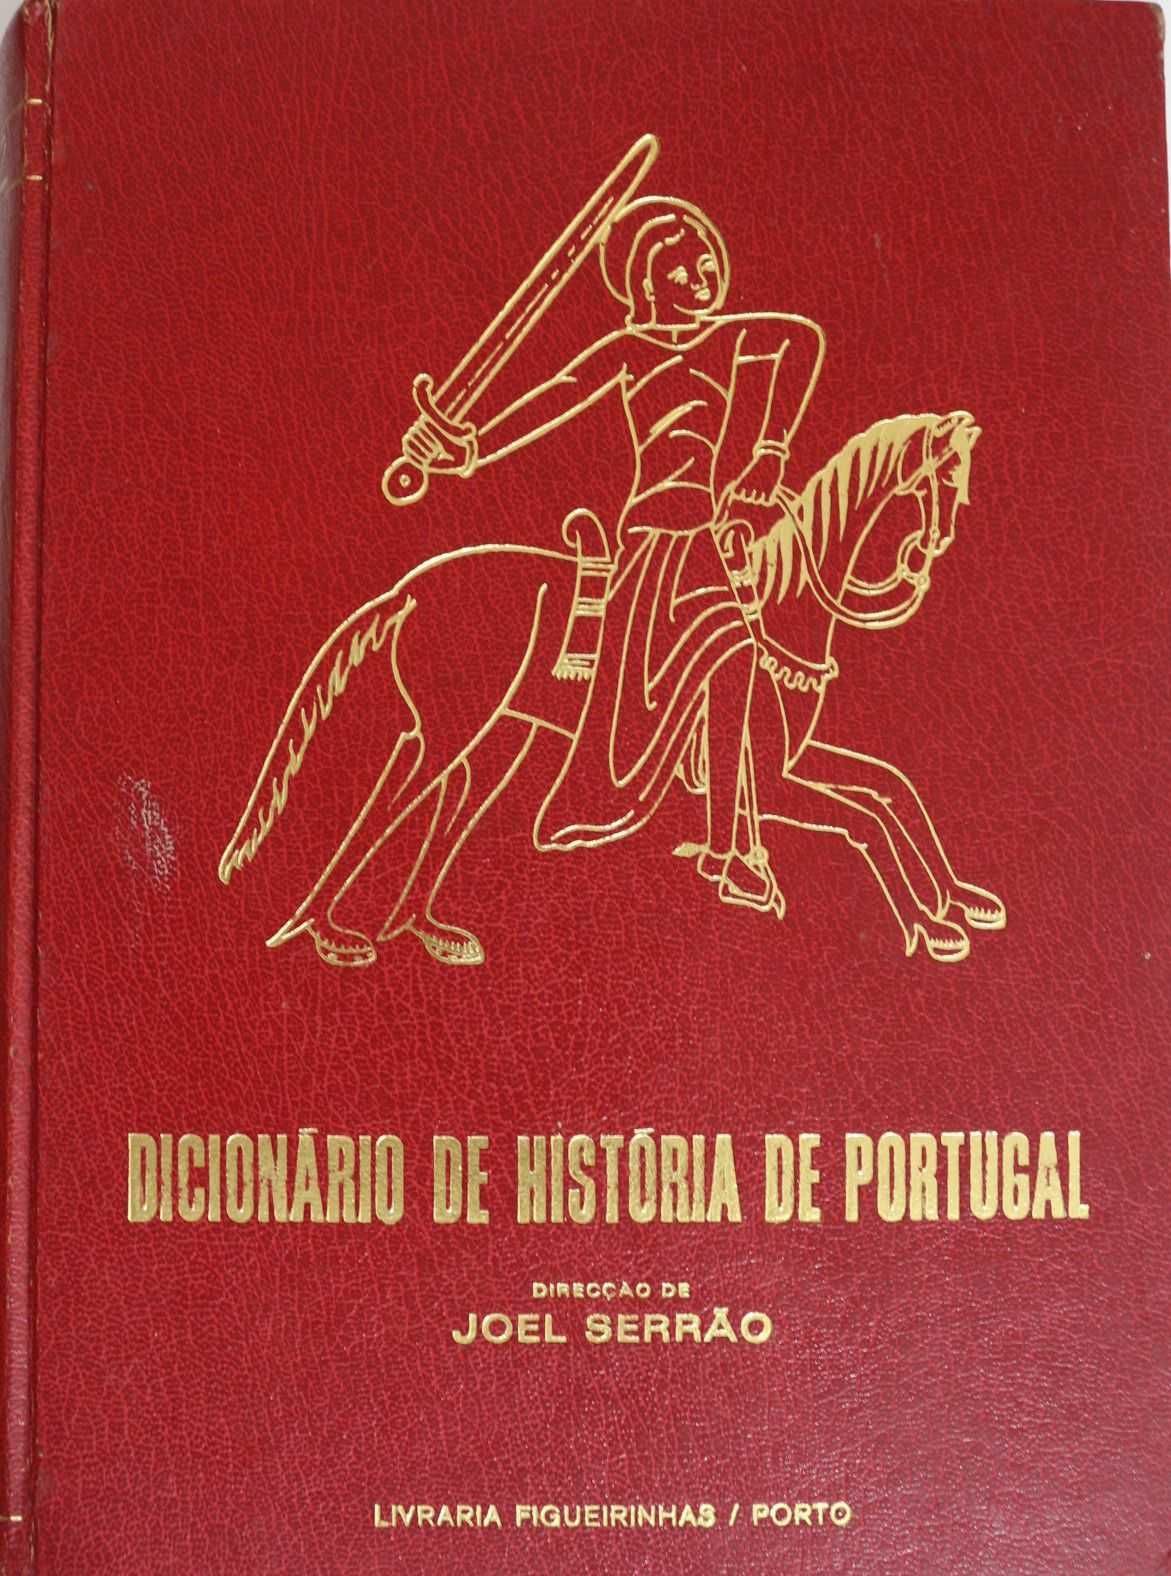 Conjunto de 4 Livros "Dicionário de História de Portugal"